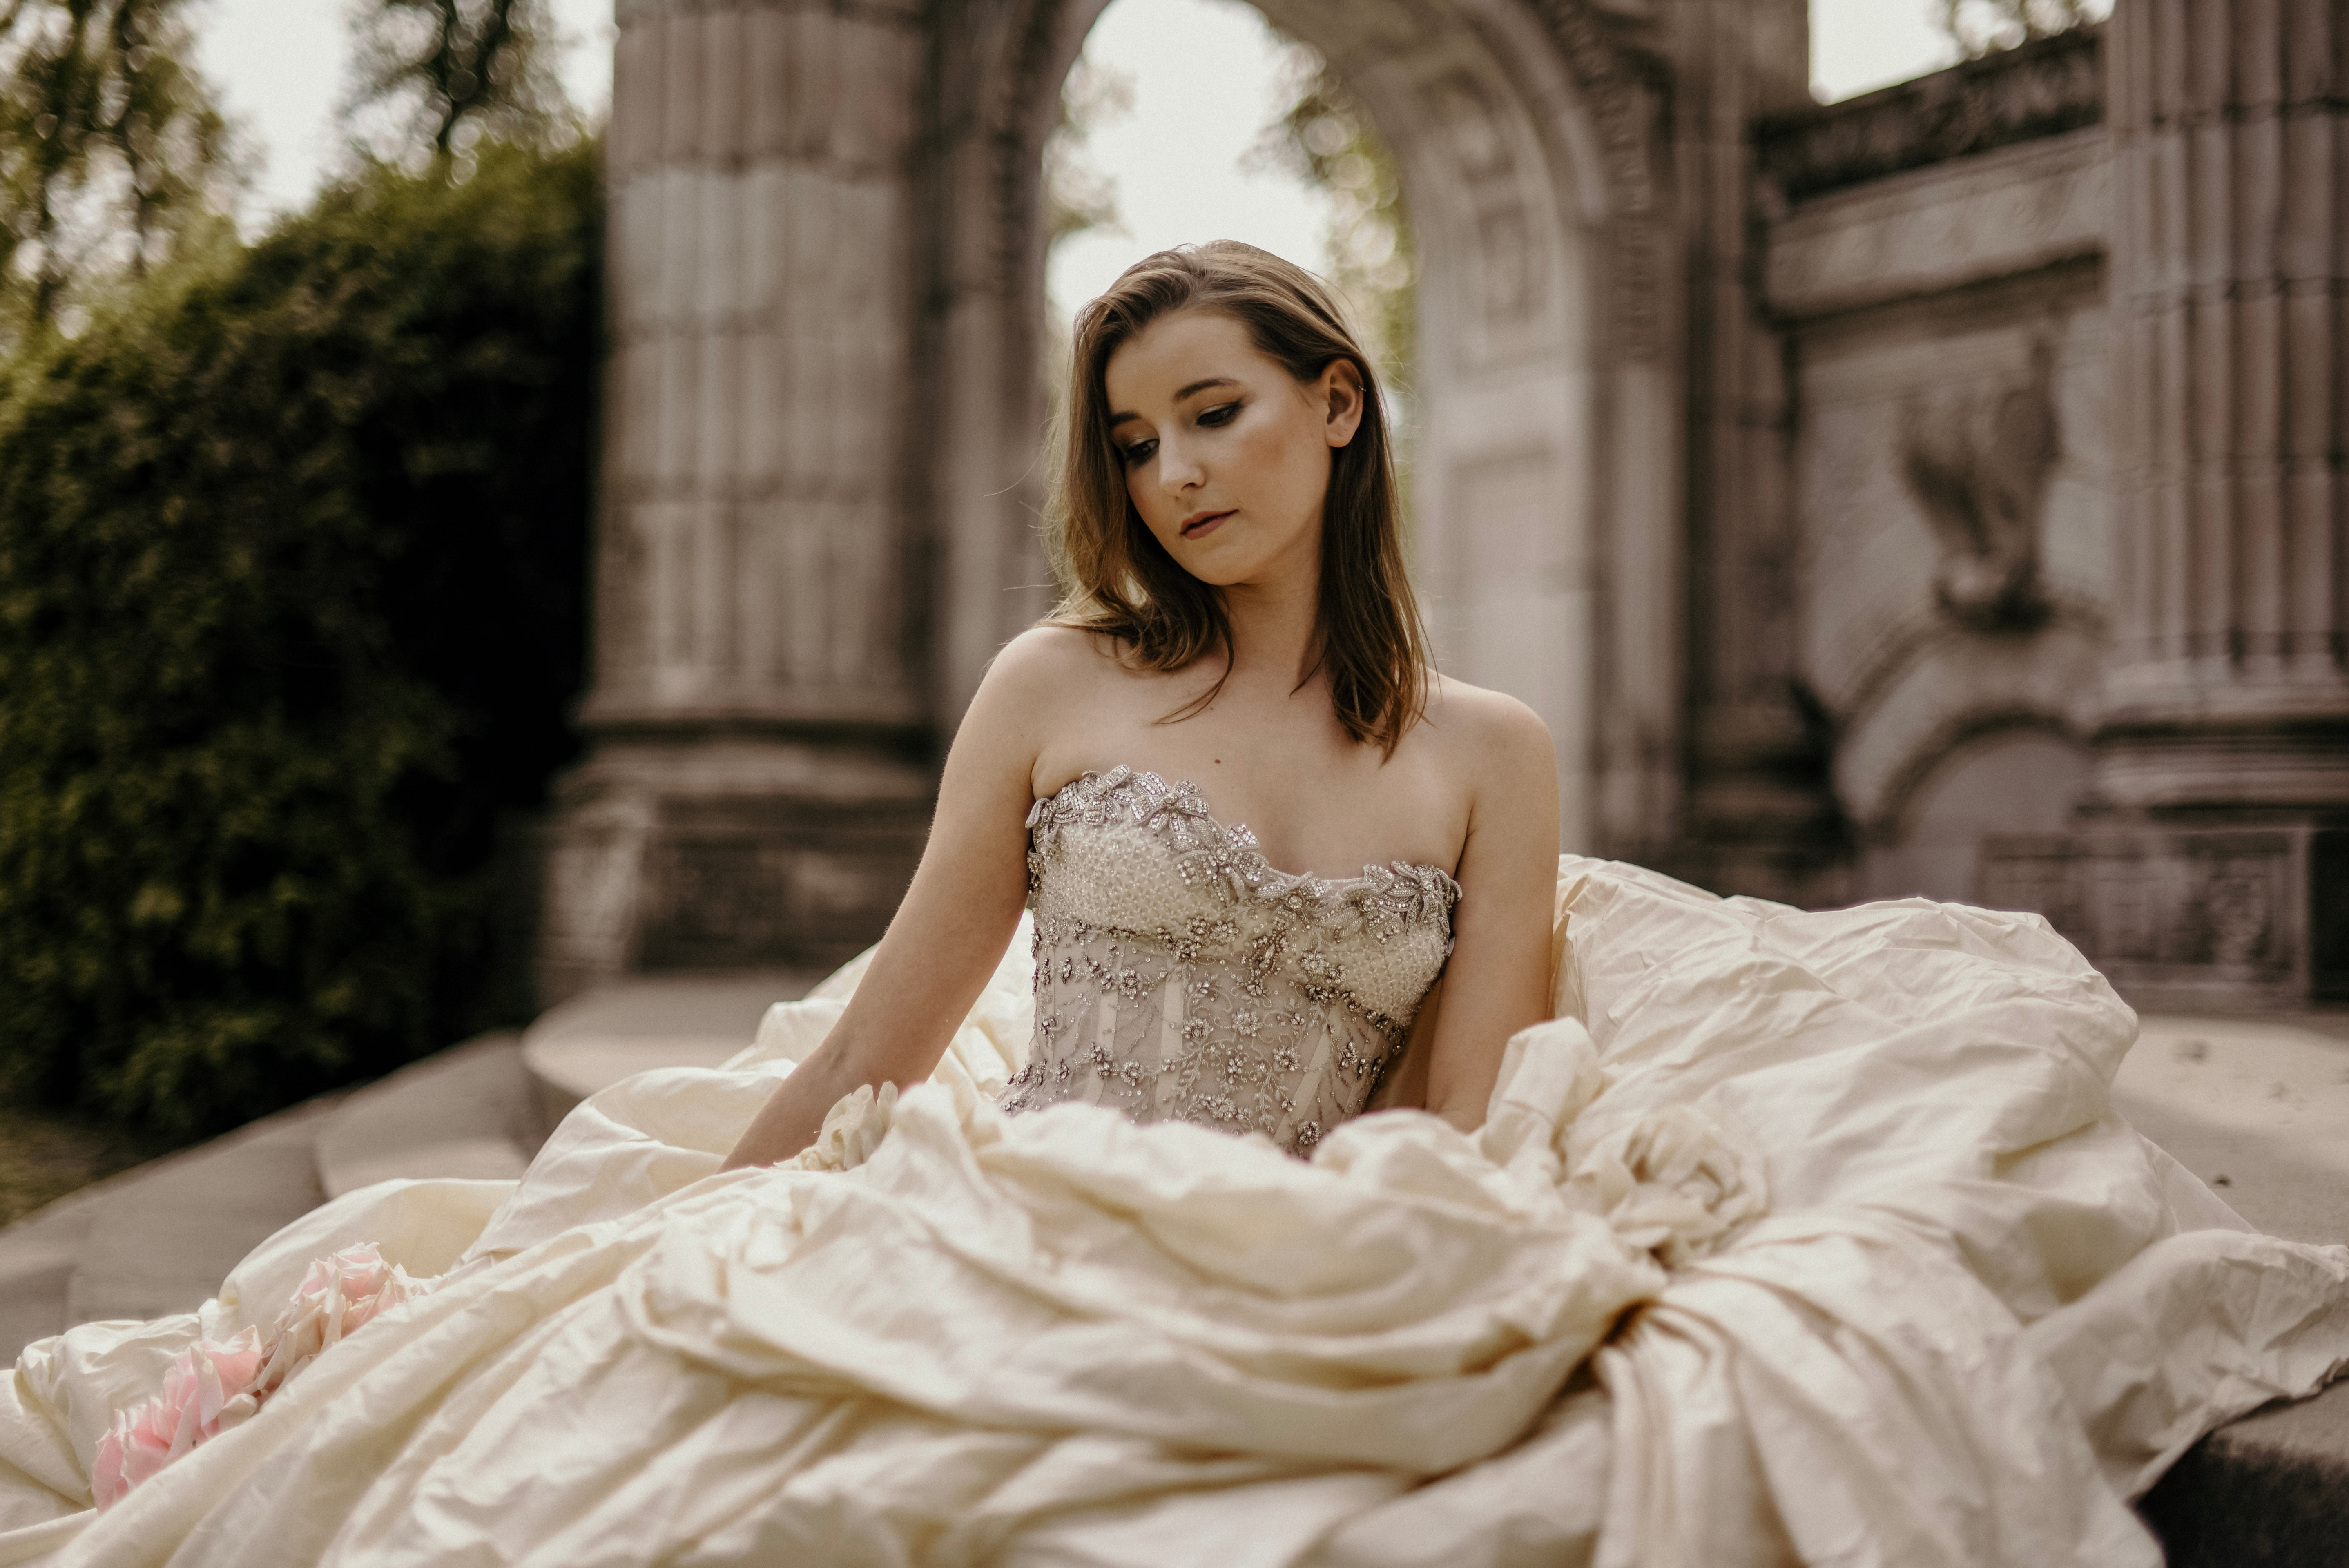 New Model V-neckline Bridal Dresses Amanda Novias Ns4517 - Wedding Dresses  - AliExpress